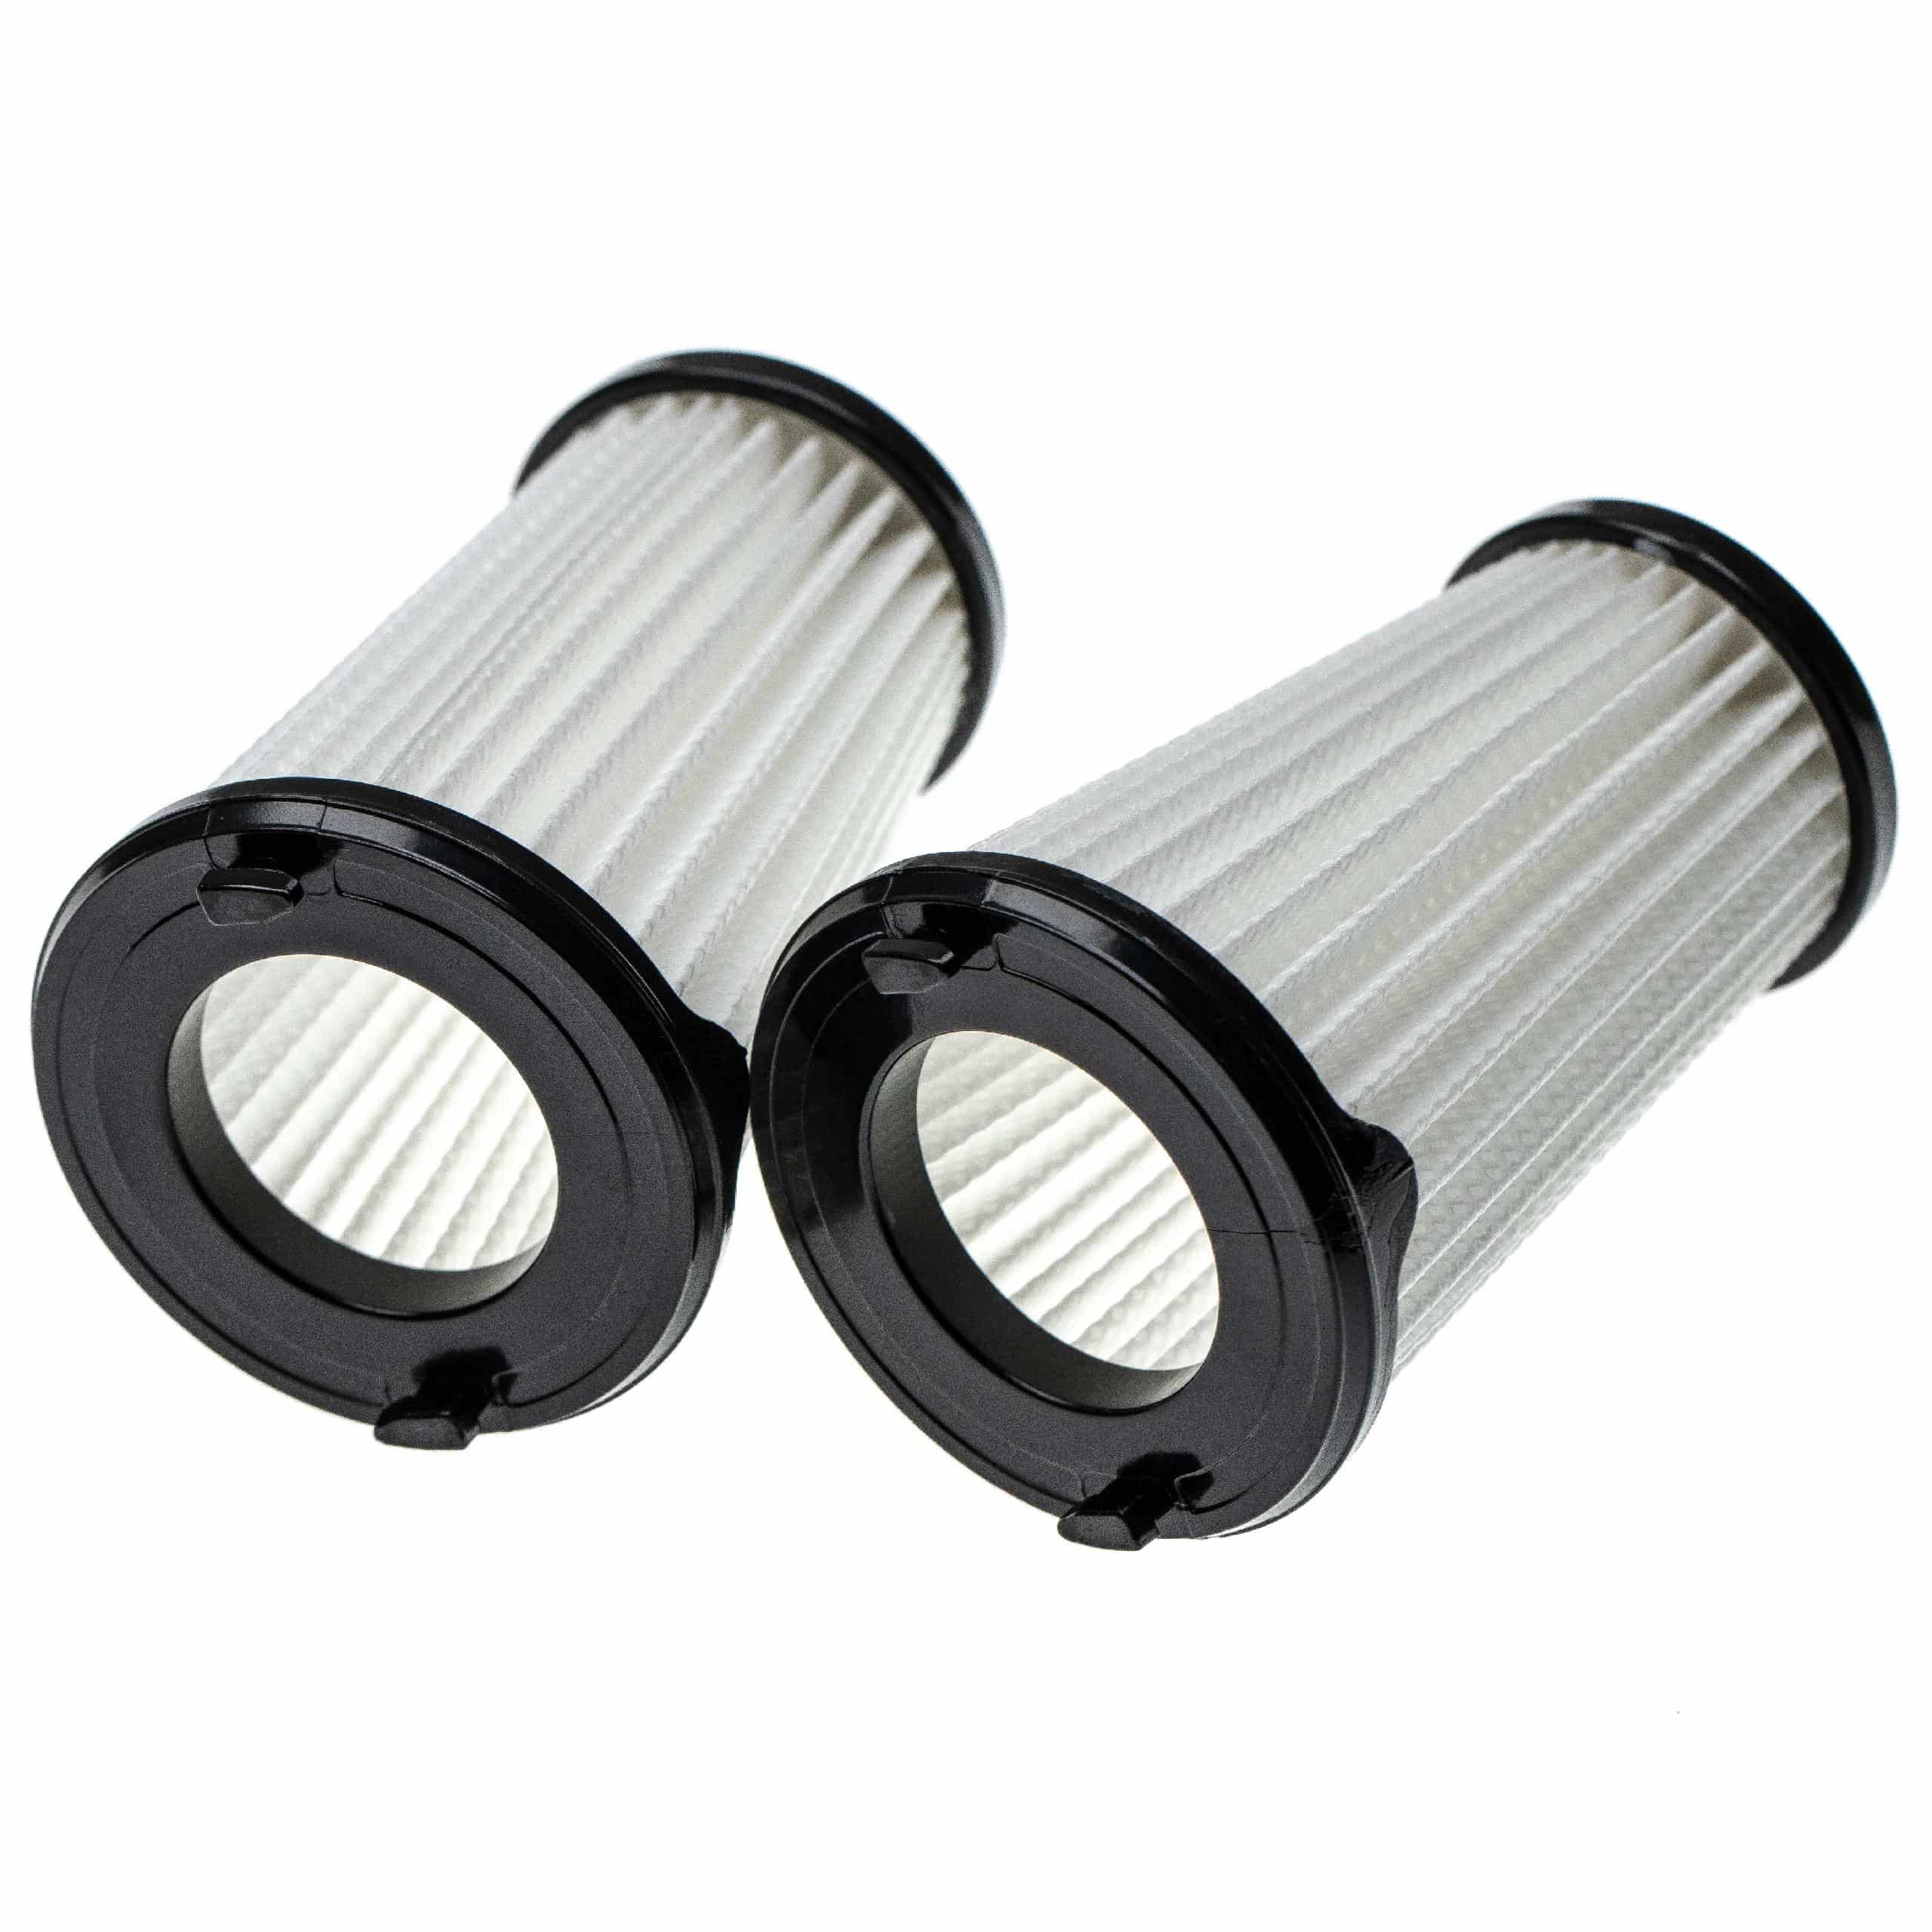 6x Filtre remplace AEG AEF150, 9001683755, 90094073100 pour aspirateur - filtre à lamelles